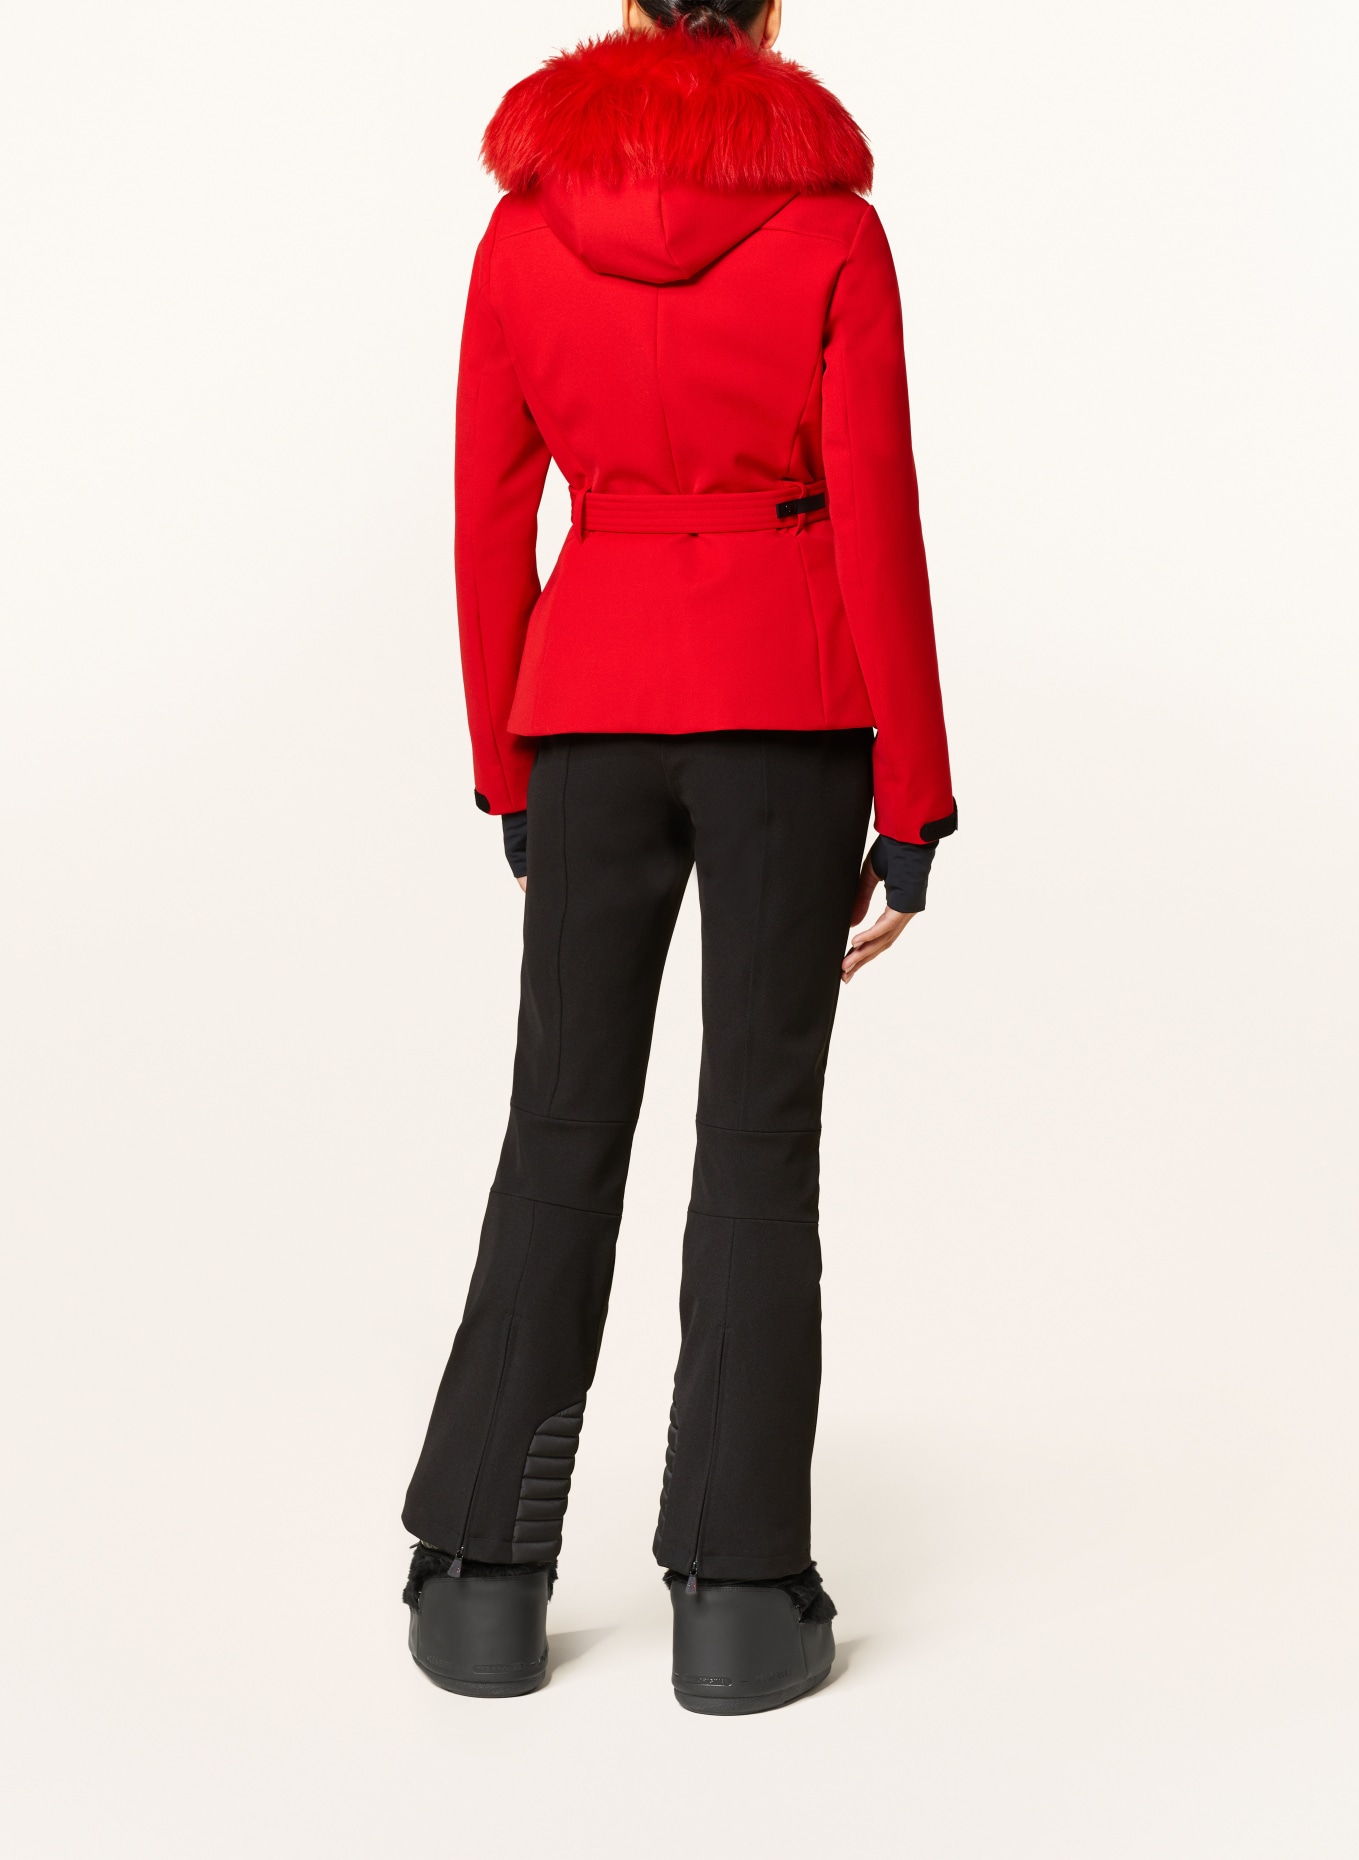 MONCLER GRENOBLE Ski jacket, Color: RED (Image 3)